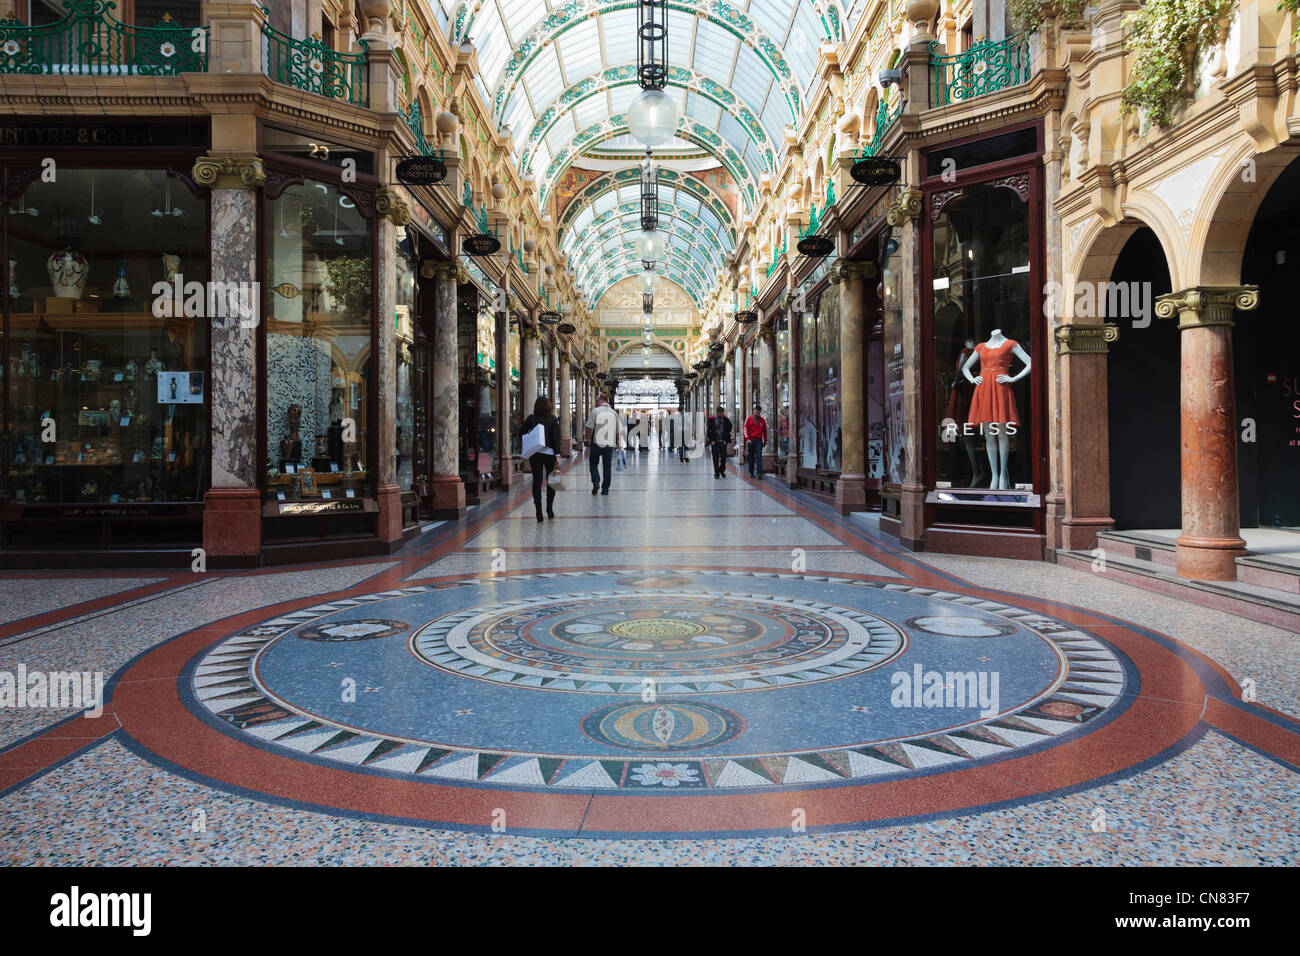 Bodenmosaik und traditionellen gehobenen Designer-Shops in Grafschaft Arcade in Victoria Quarter Einkaufszentrum in Leeds England UK Stockfoto